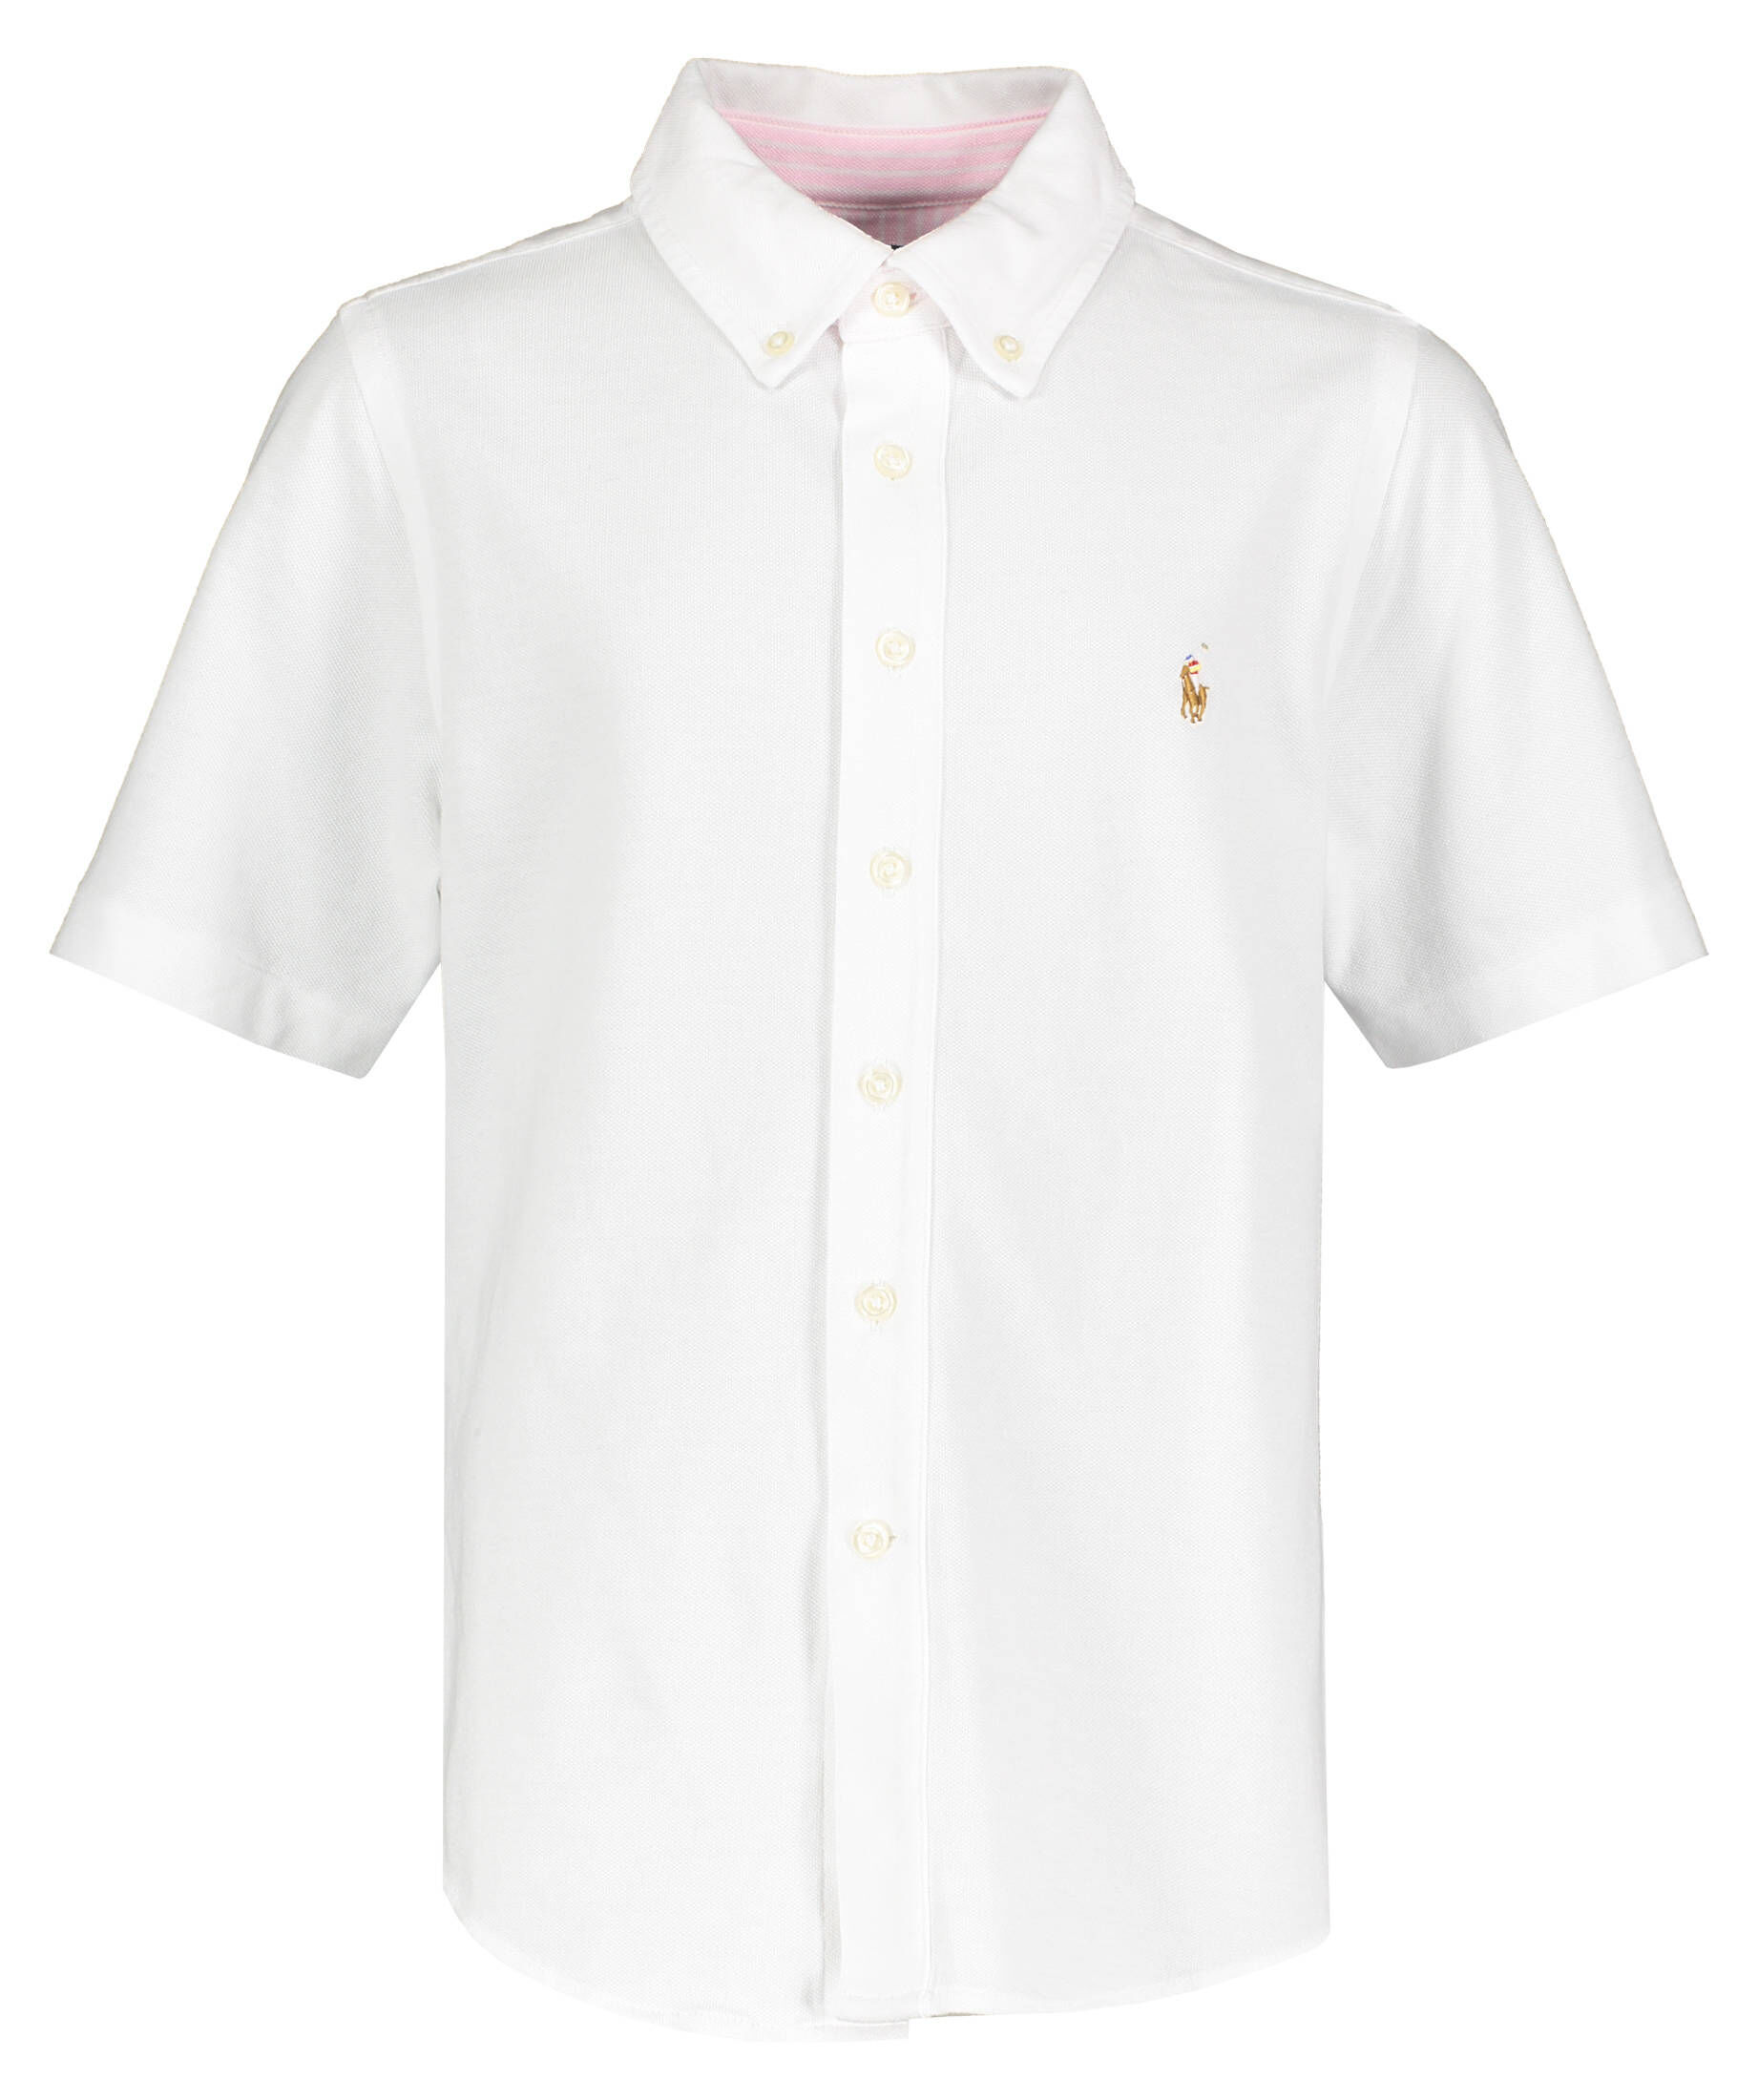 Jungen Bekleidung Hemden DE 140 Polo Ralph Lauren Jungen Hemd Gr 